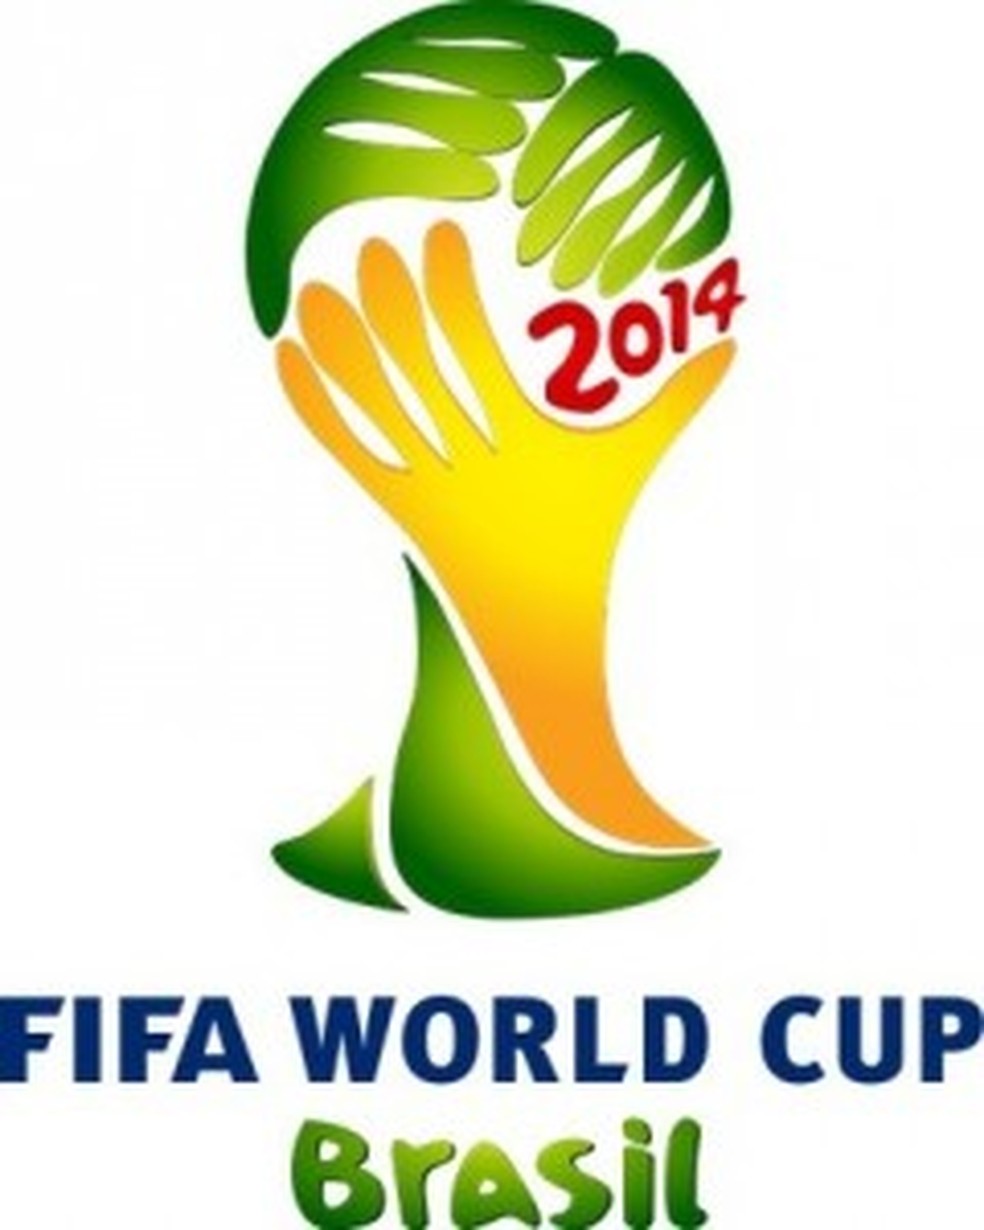 Fifa Mobile recebe atualização que traz a Copa do Mundo para os  dispositivos móveis 